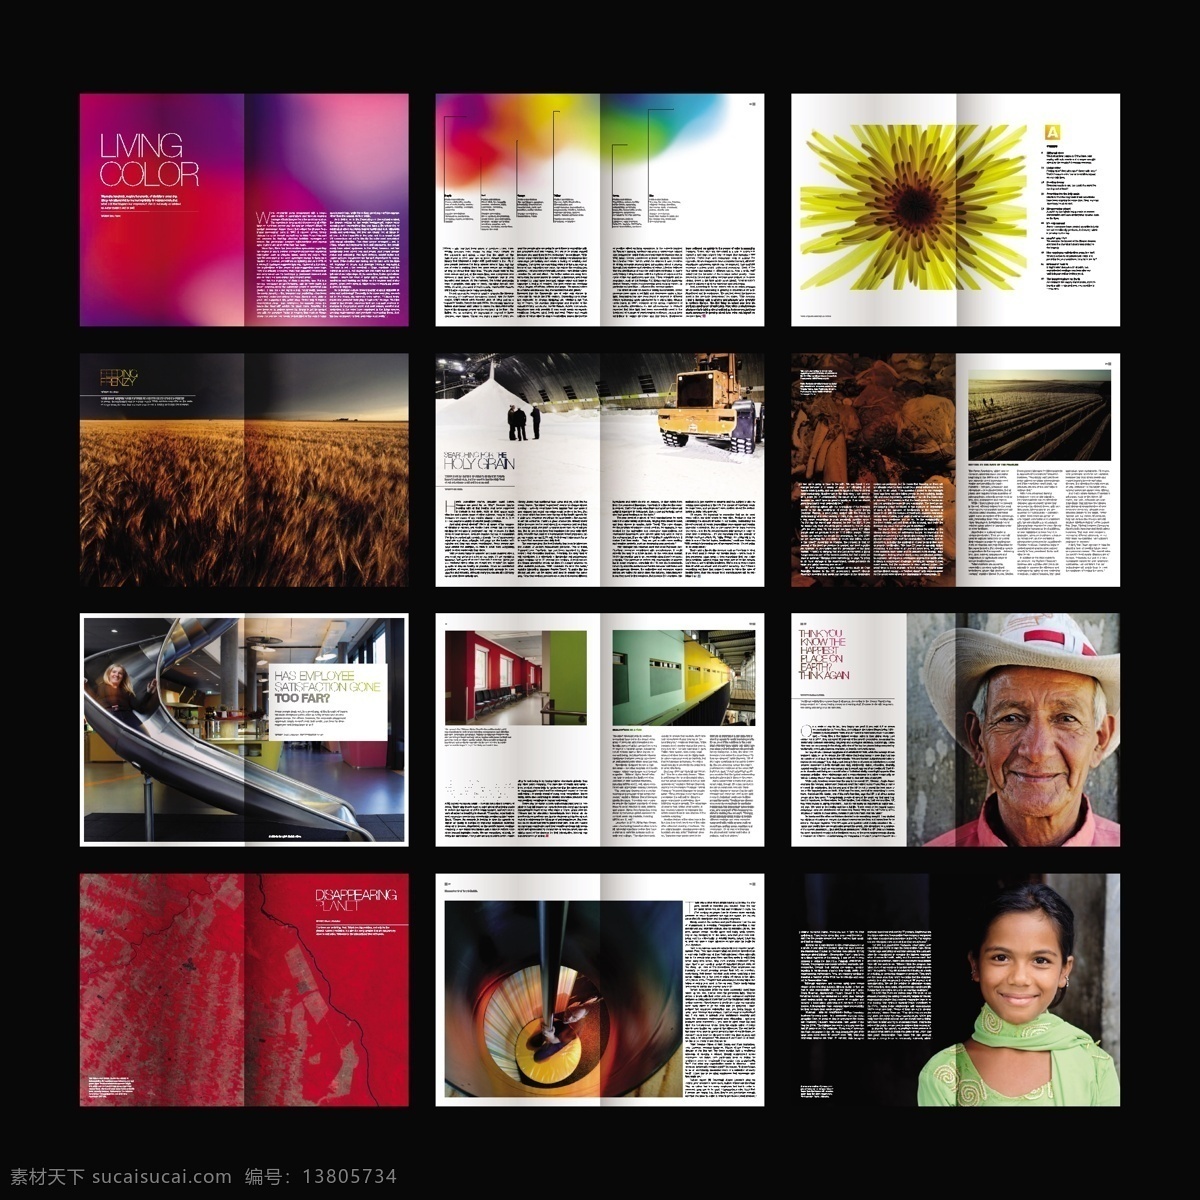 城市画册 画册 册子 折页 排版 板式 宣传 文化 艺术 广告 城市 建设 农业 人物 颜色 设施 画册设计